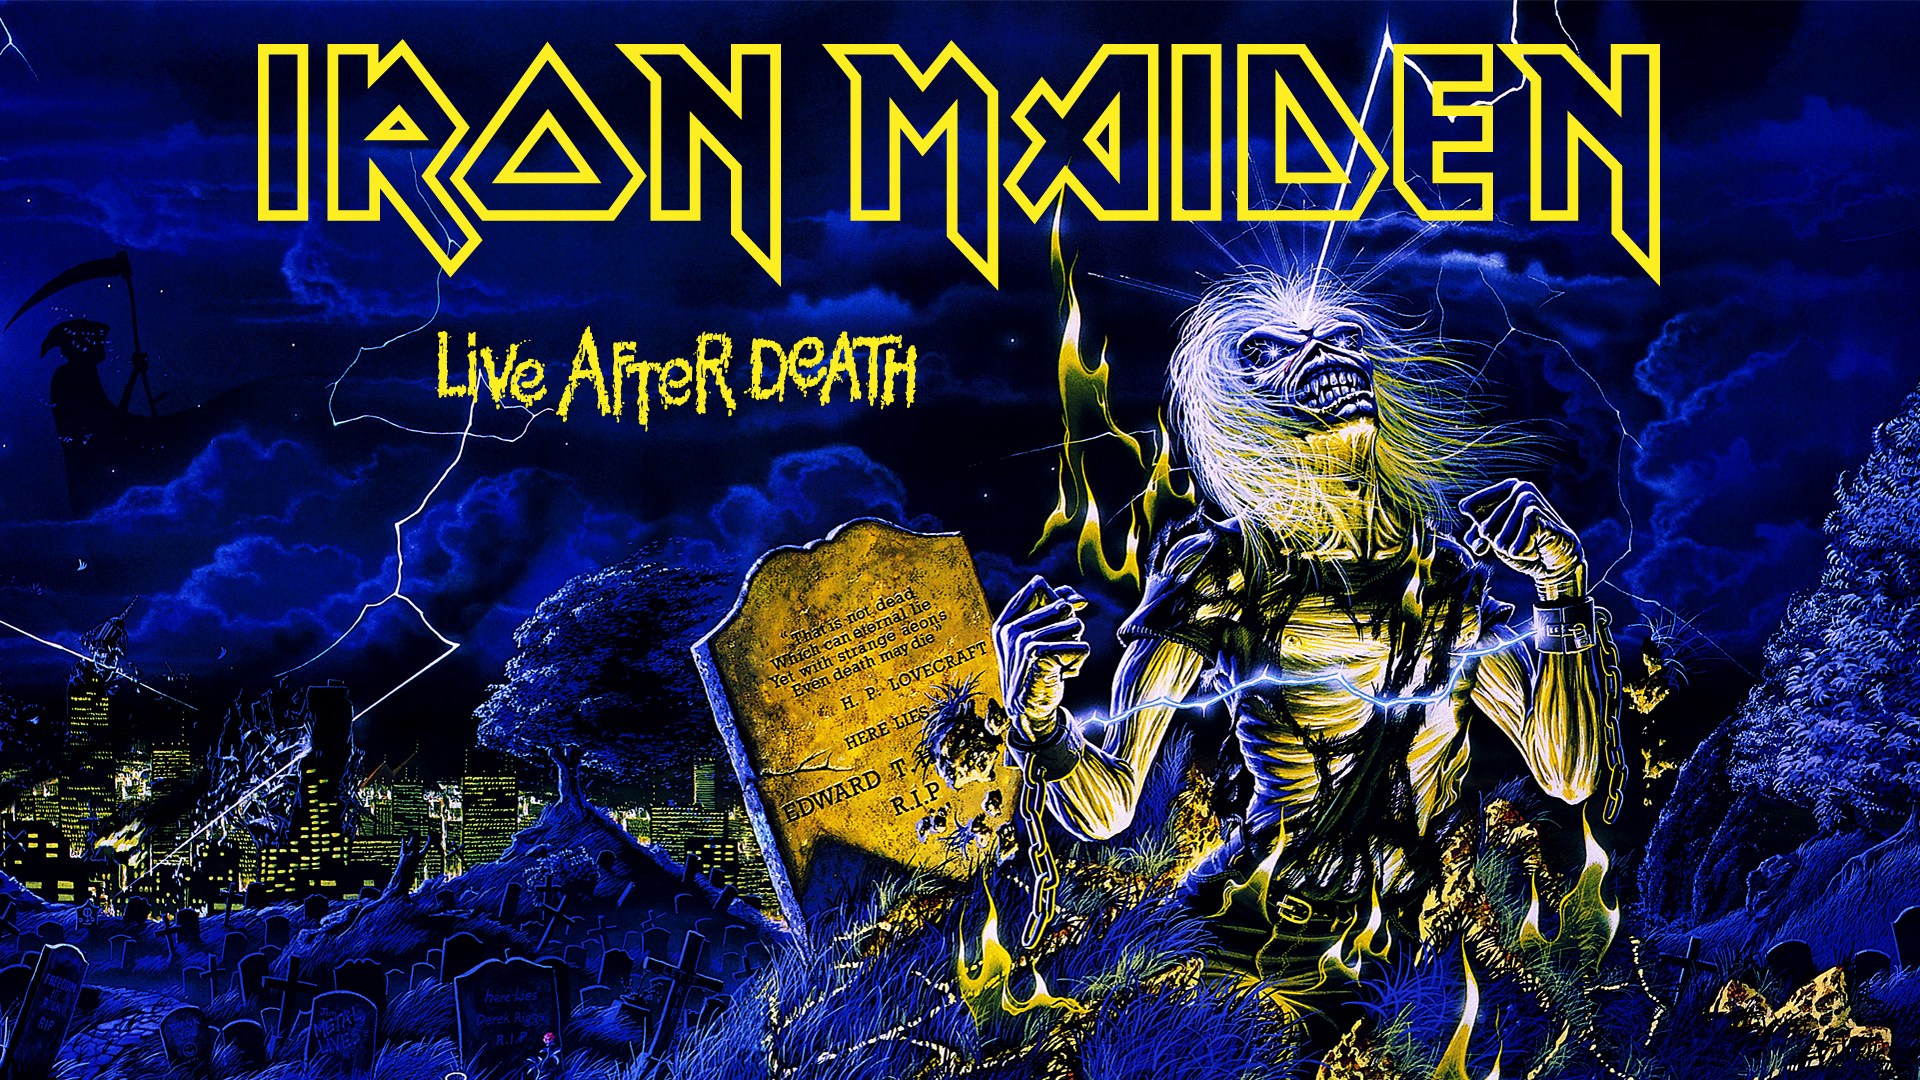 Iron Maiden Wallpaper 1080p - HD Wallpaper 